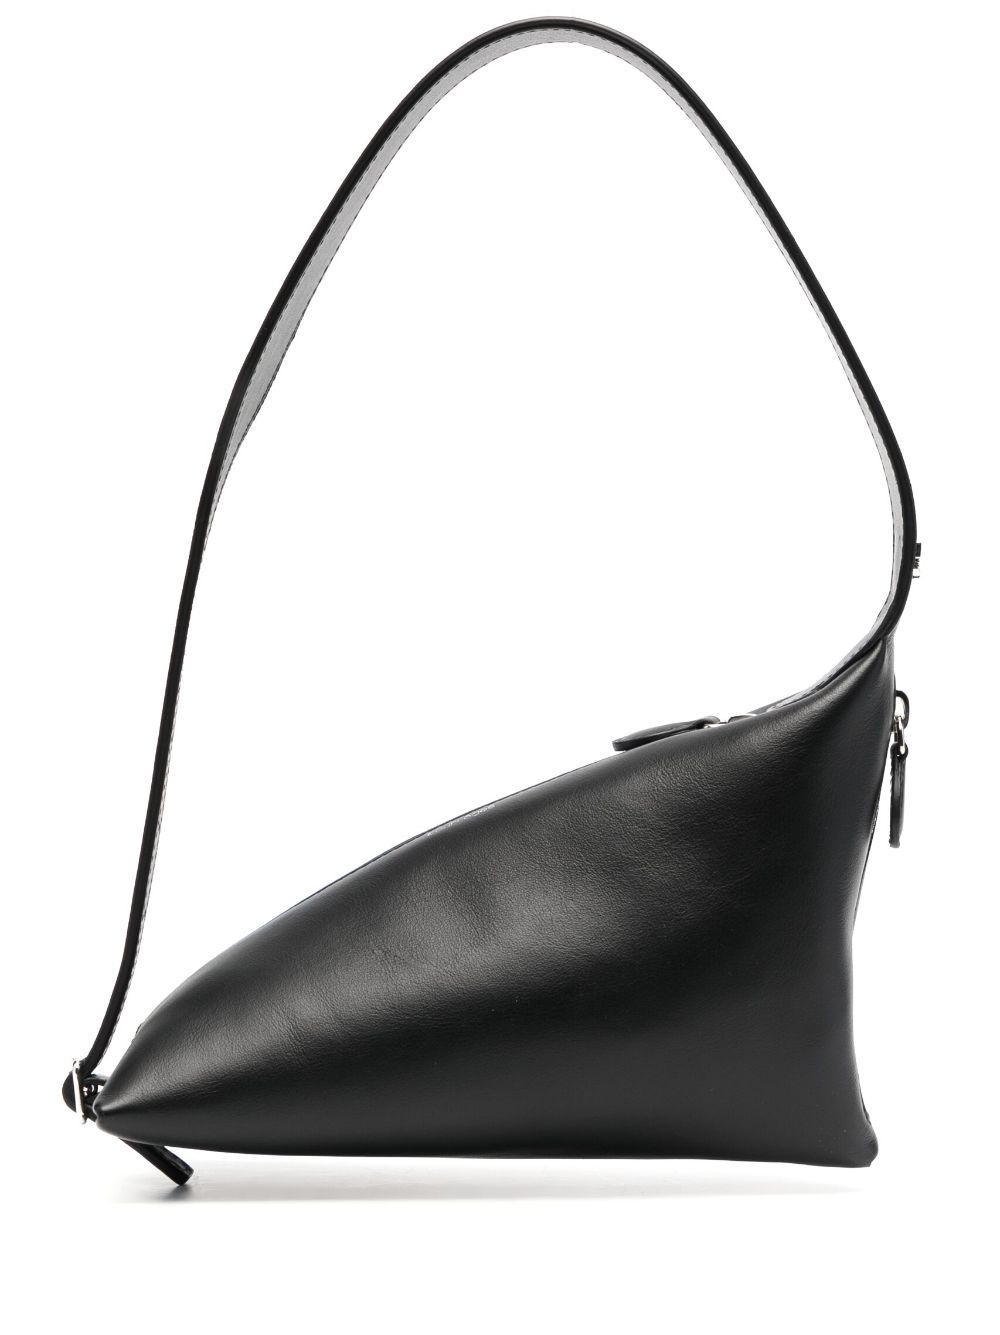 Courrèges The One leather bag - Black von Courrèges